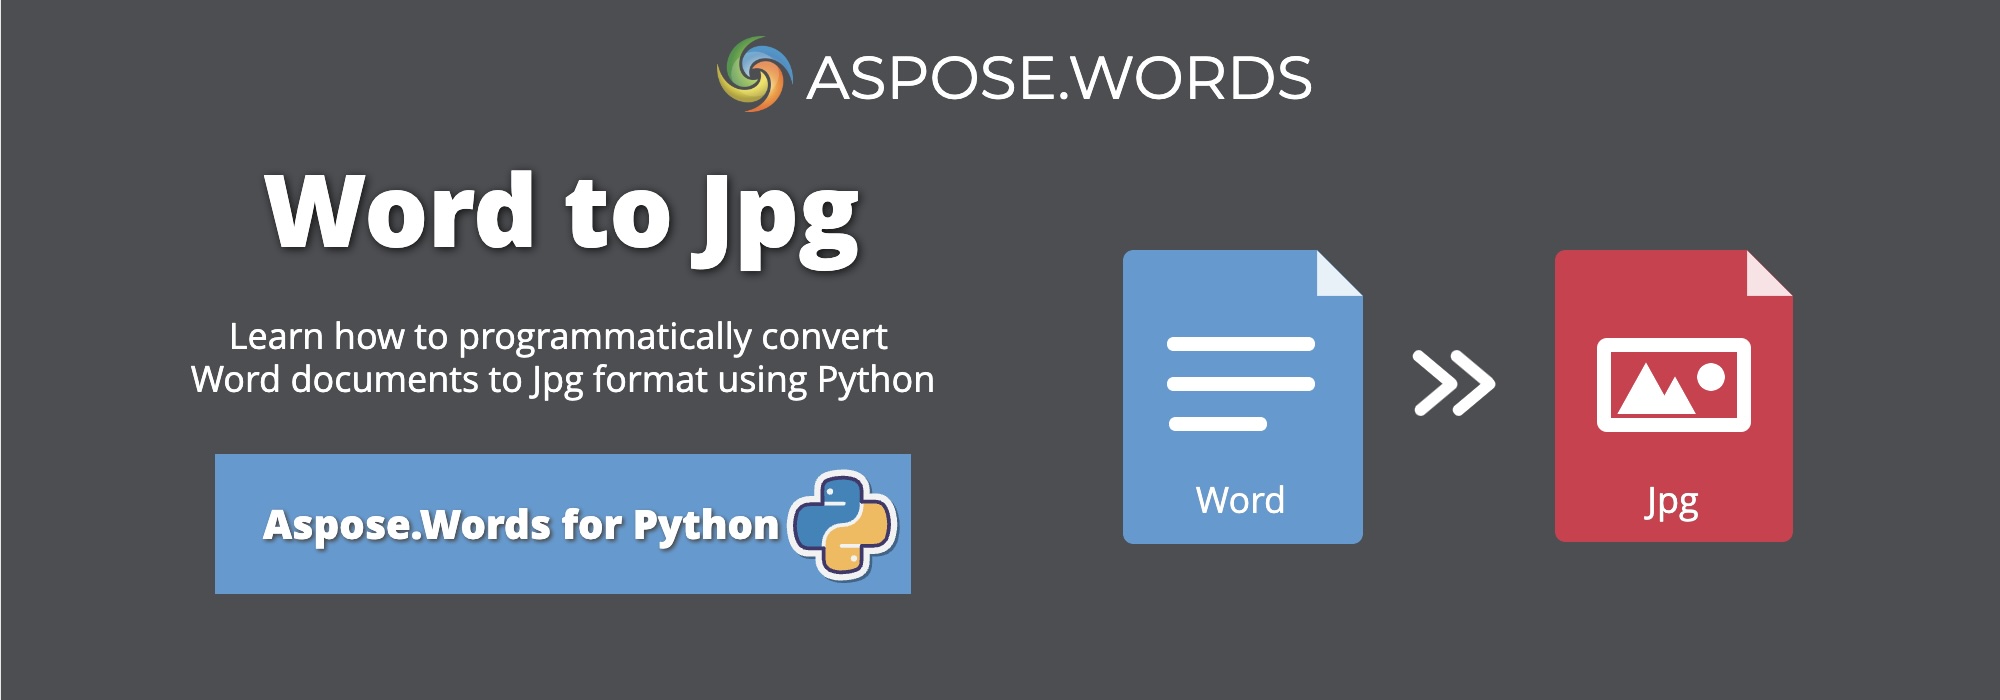 将Word转换为JPG Python | 将DOCX转换为JPG Python